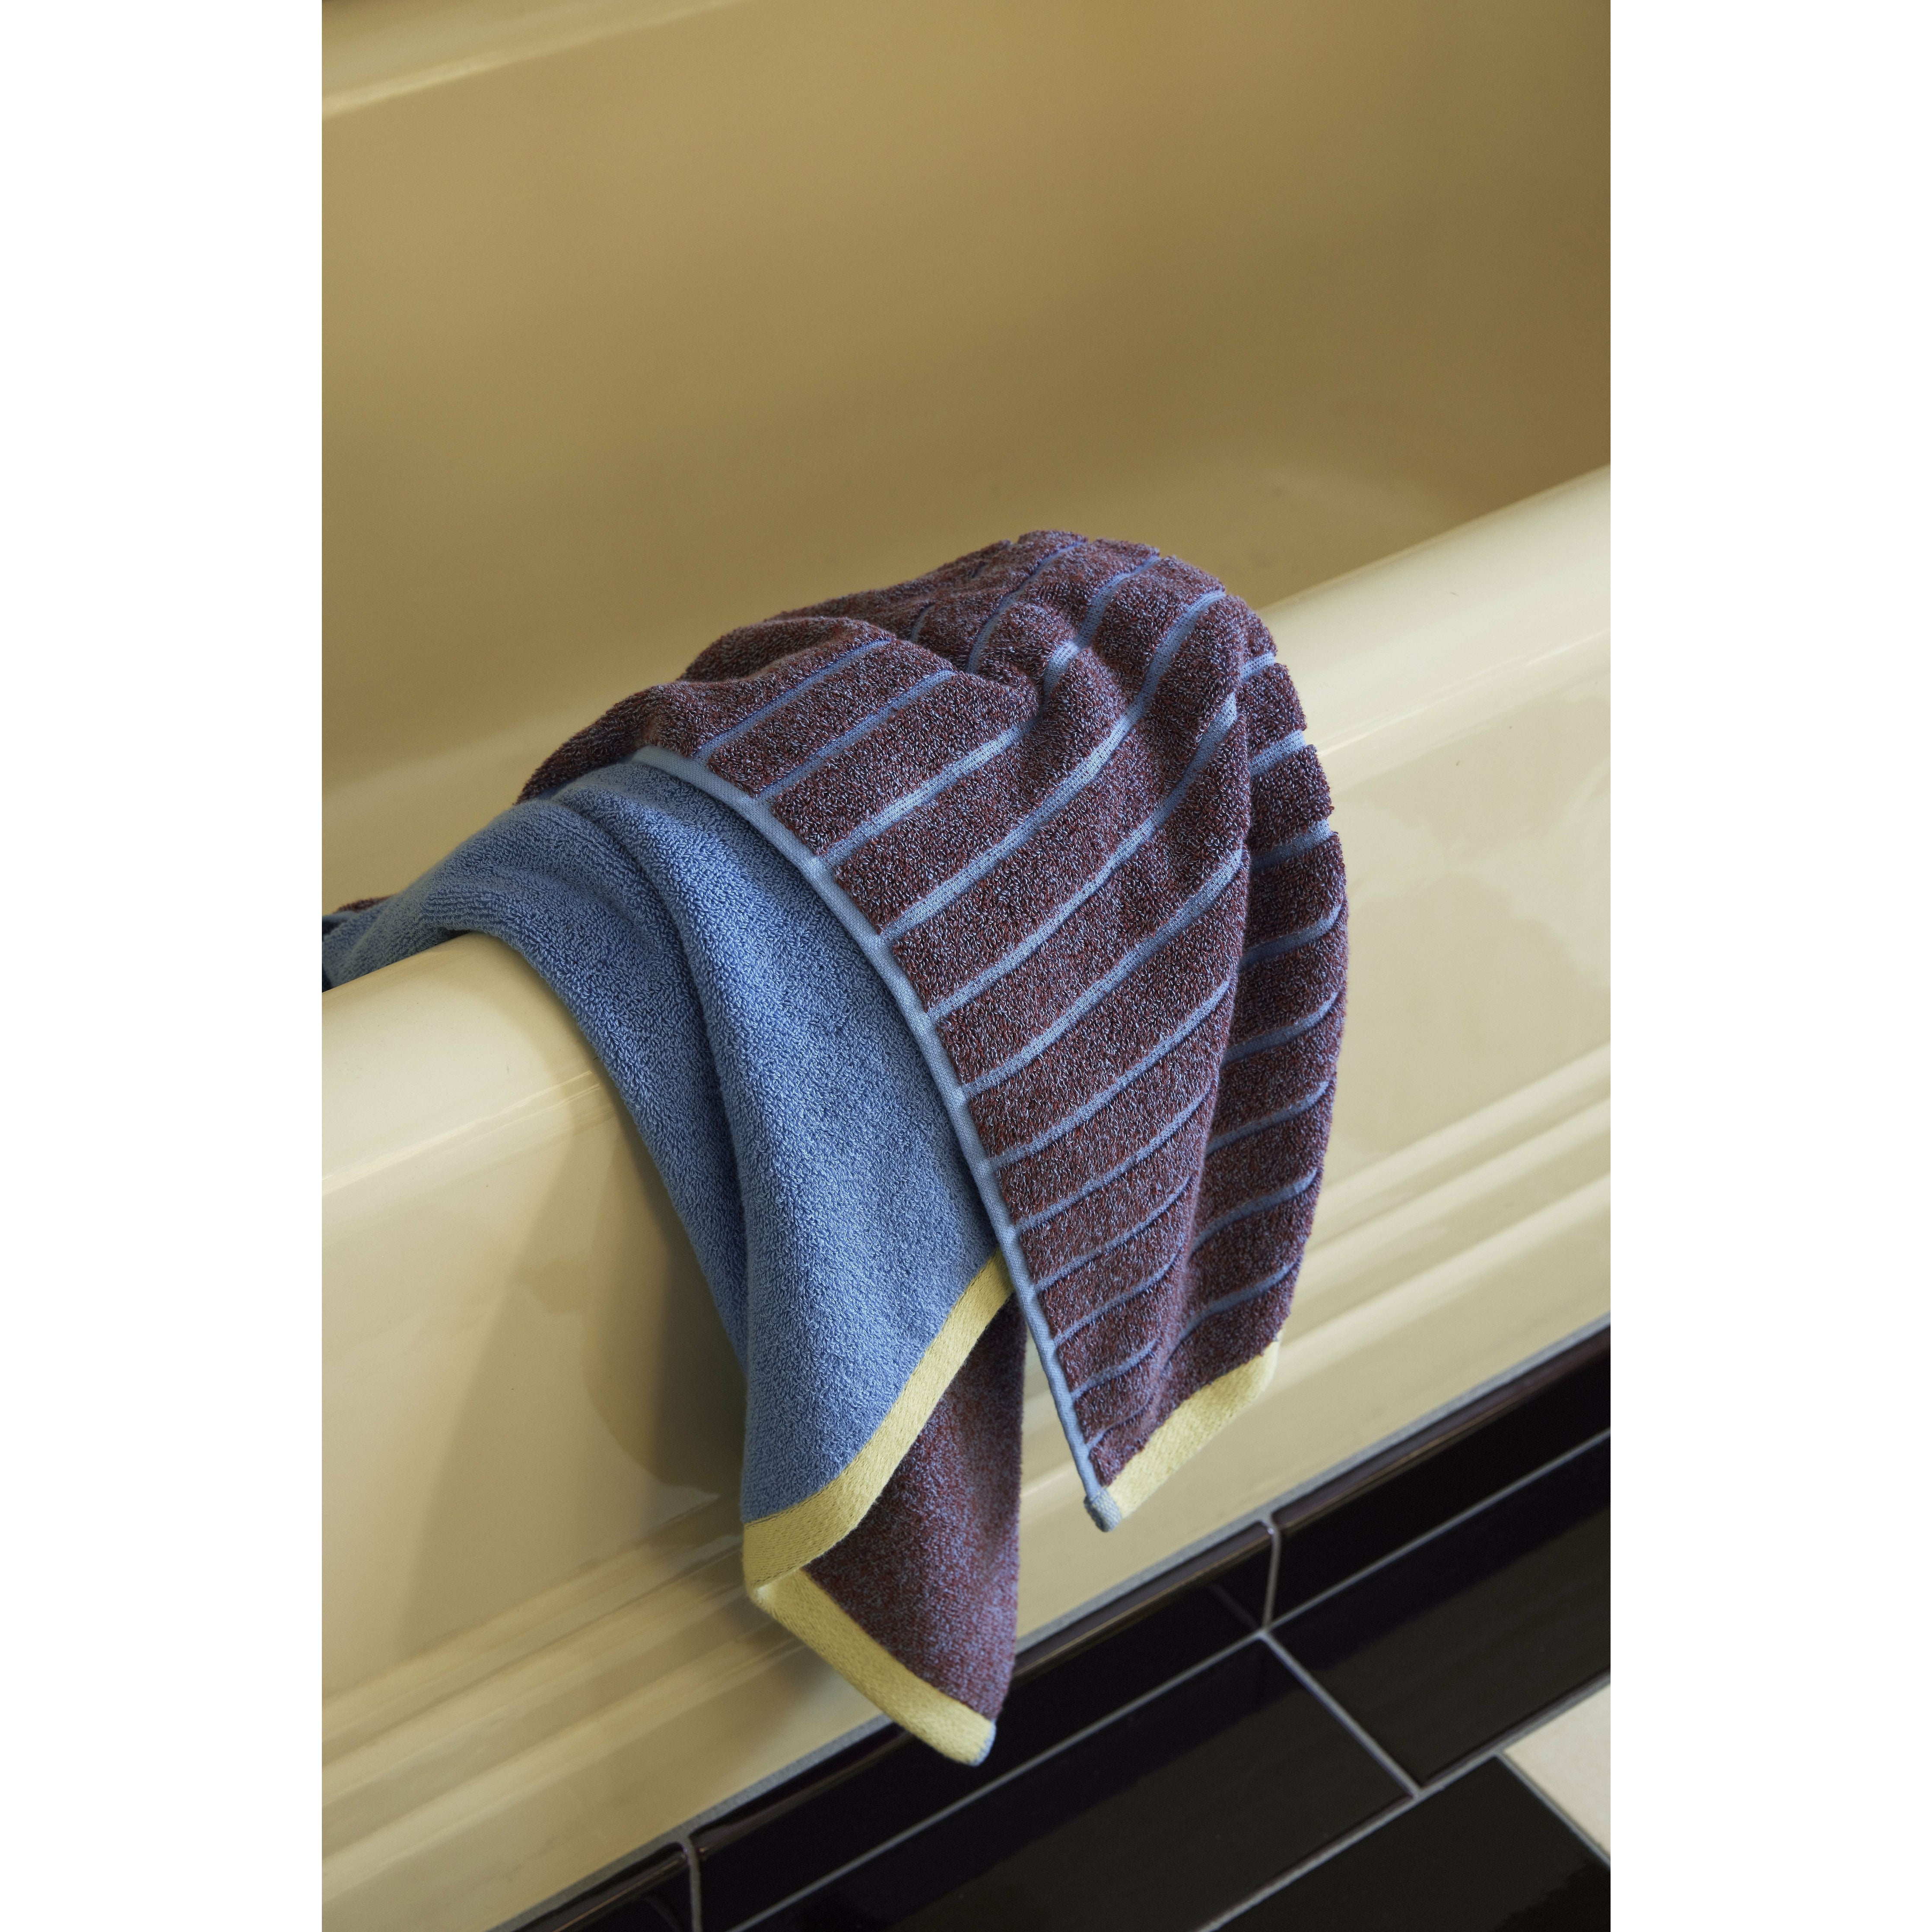 Hübsch Promenade handdoek groot, paars/blauw